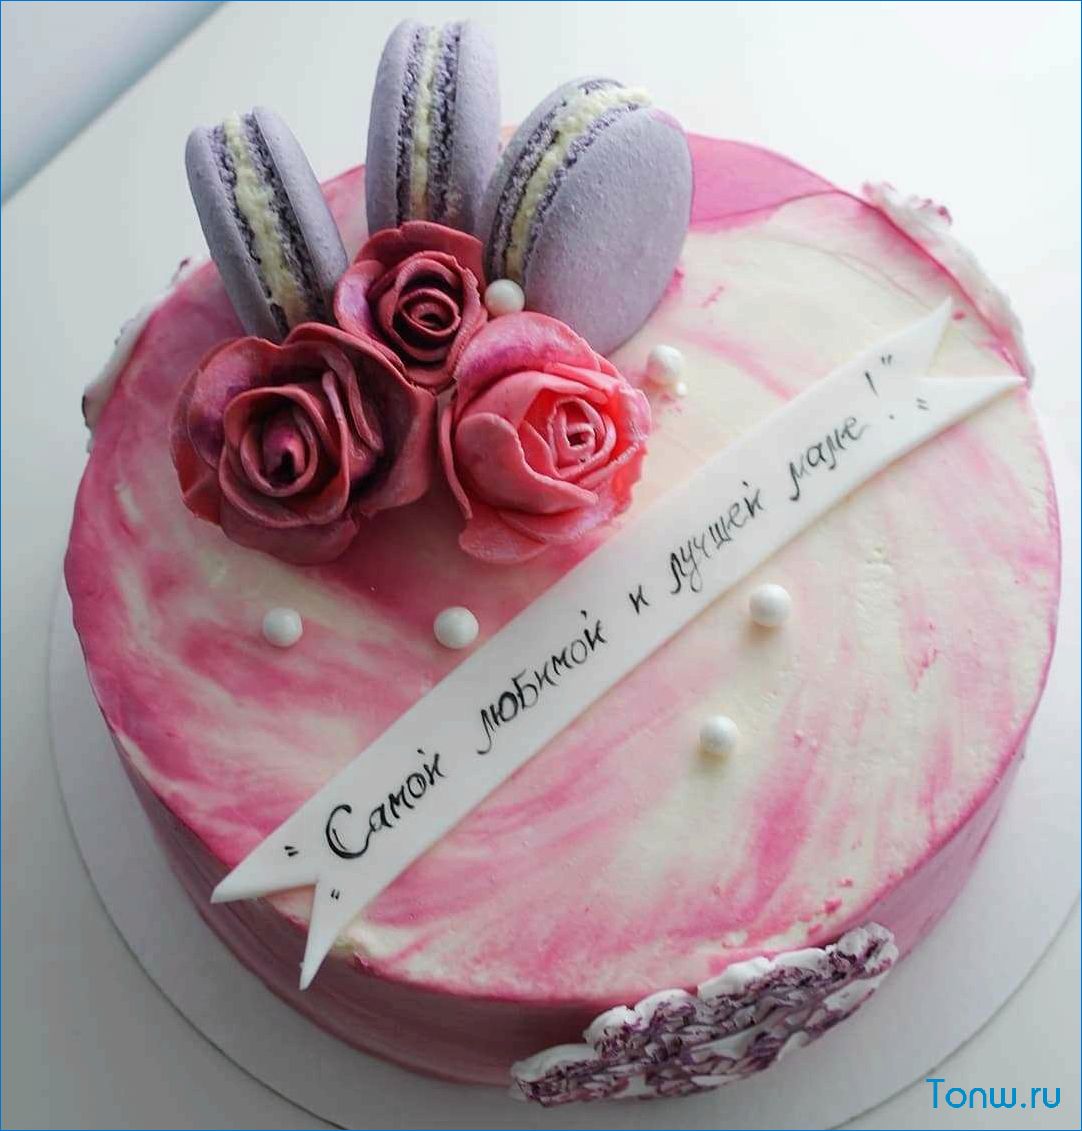 Лучшие и оригинальные торты на день рождения для вашего праздника